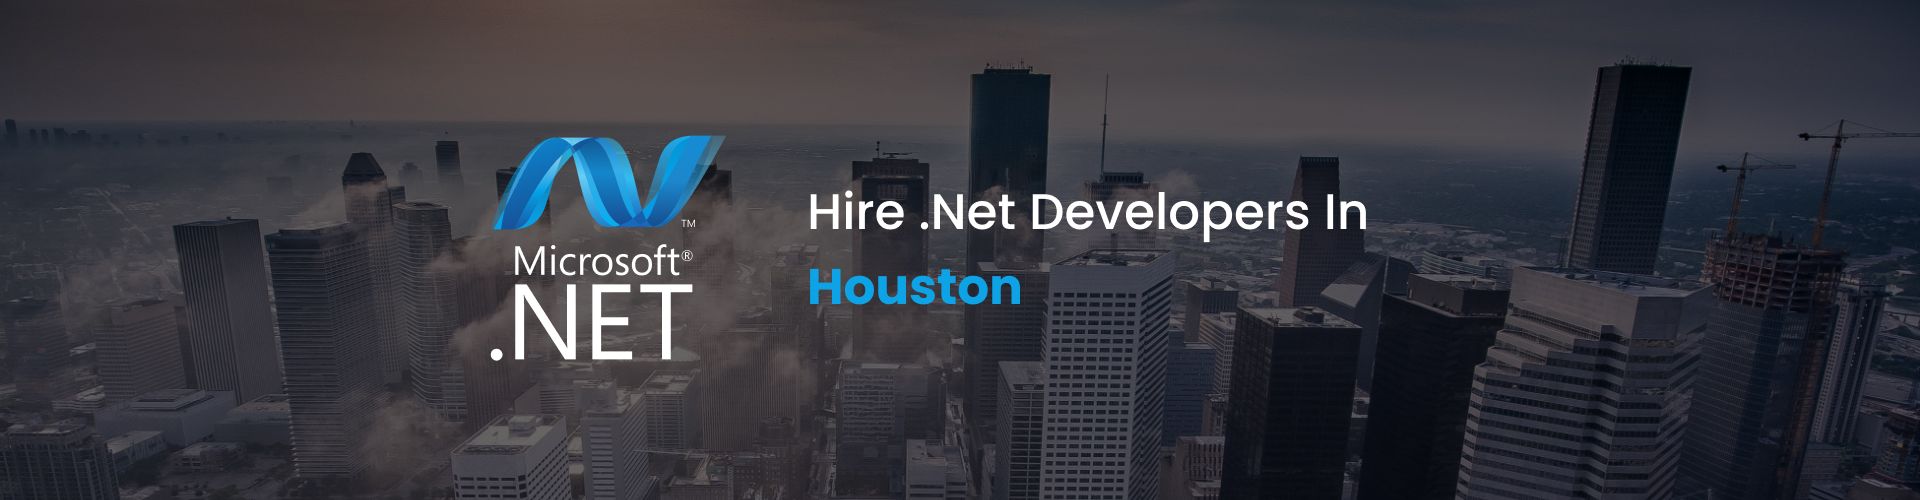 hire .net developers in houston